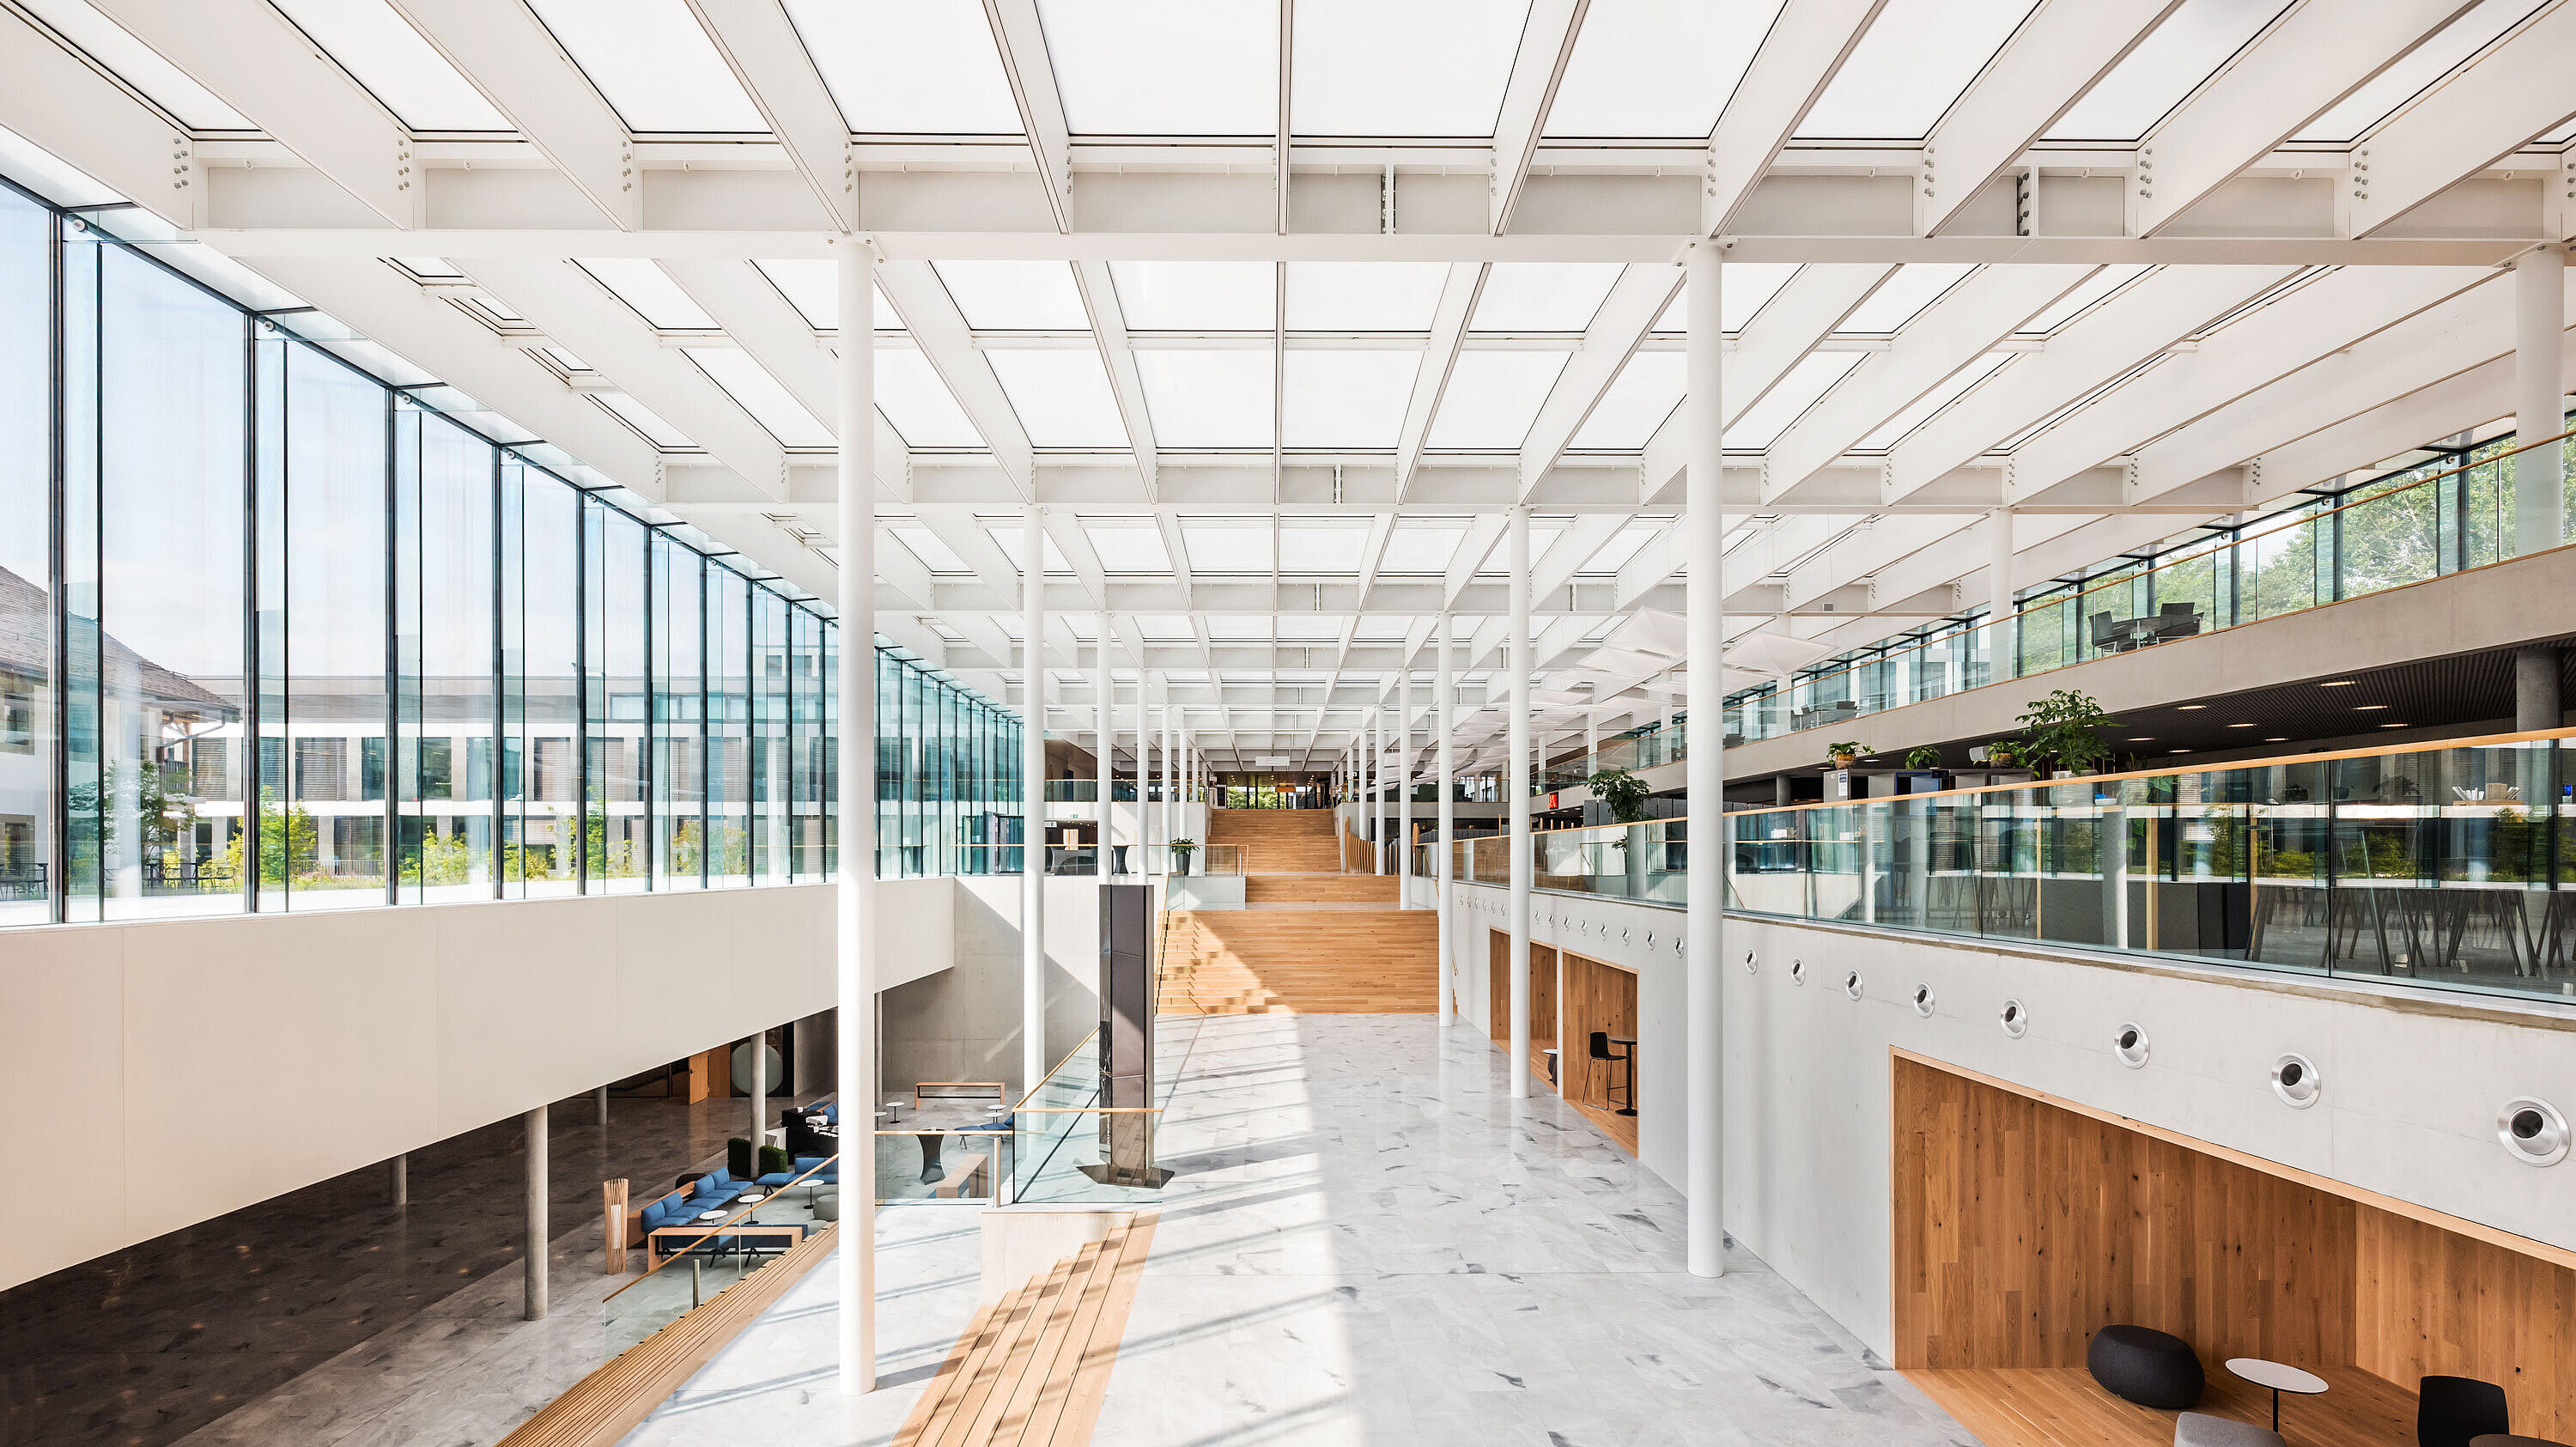 École hôtelière de Lausanne, Lausanne mit Okalux K: Lernen durch Beobachten